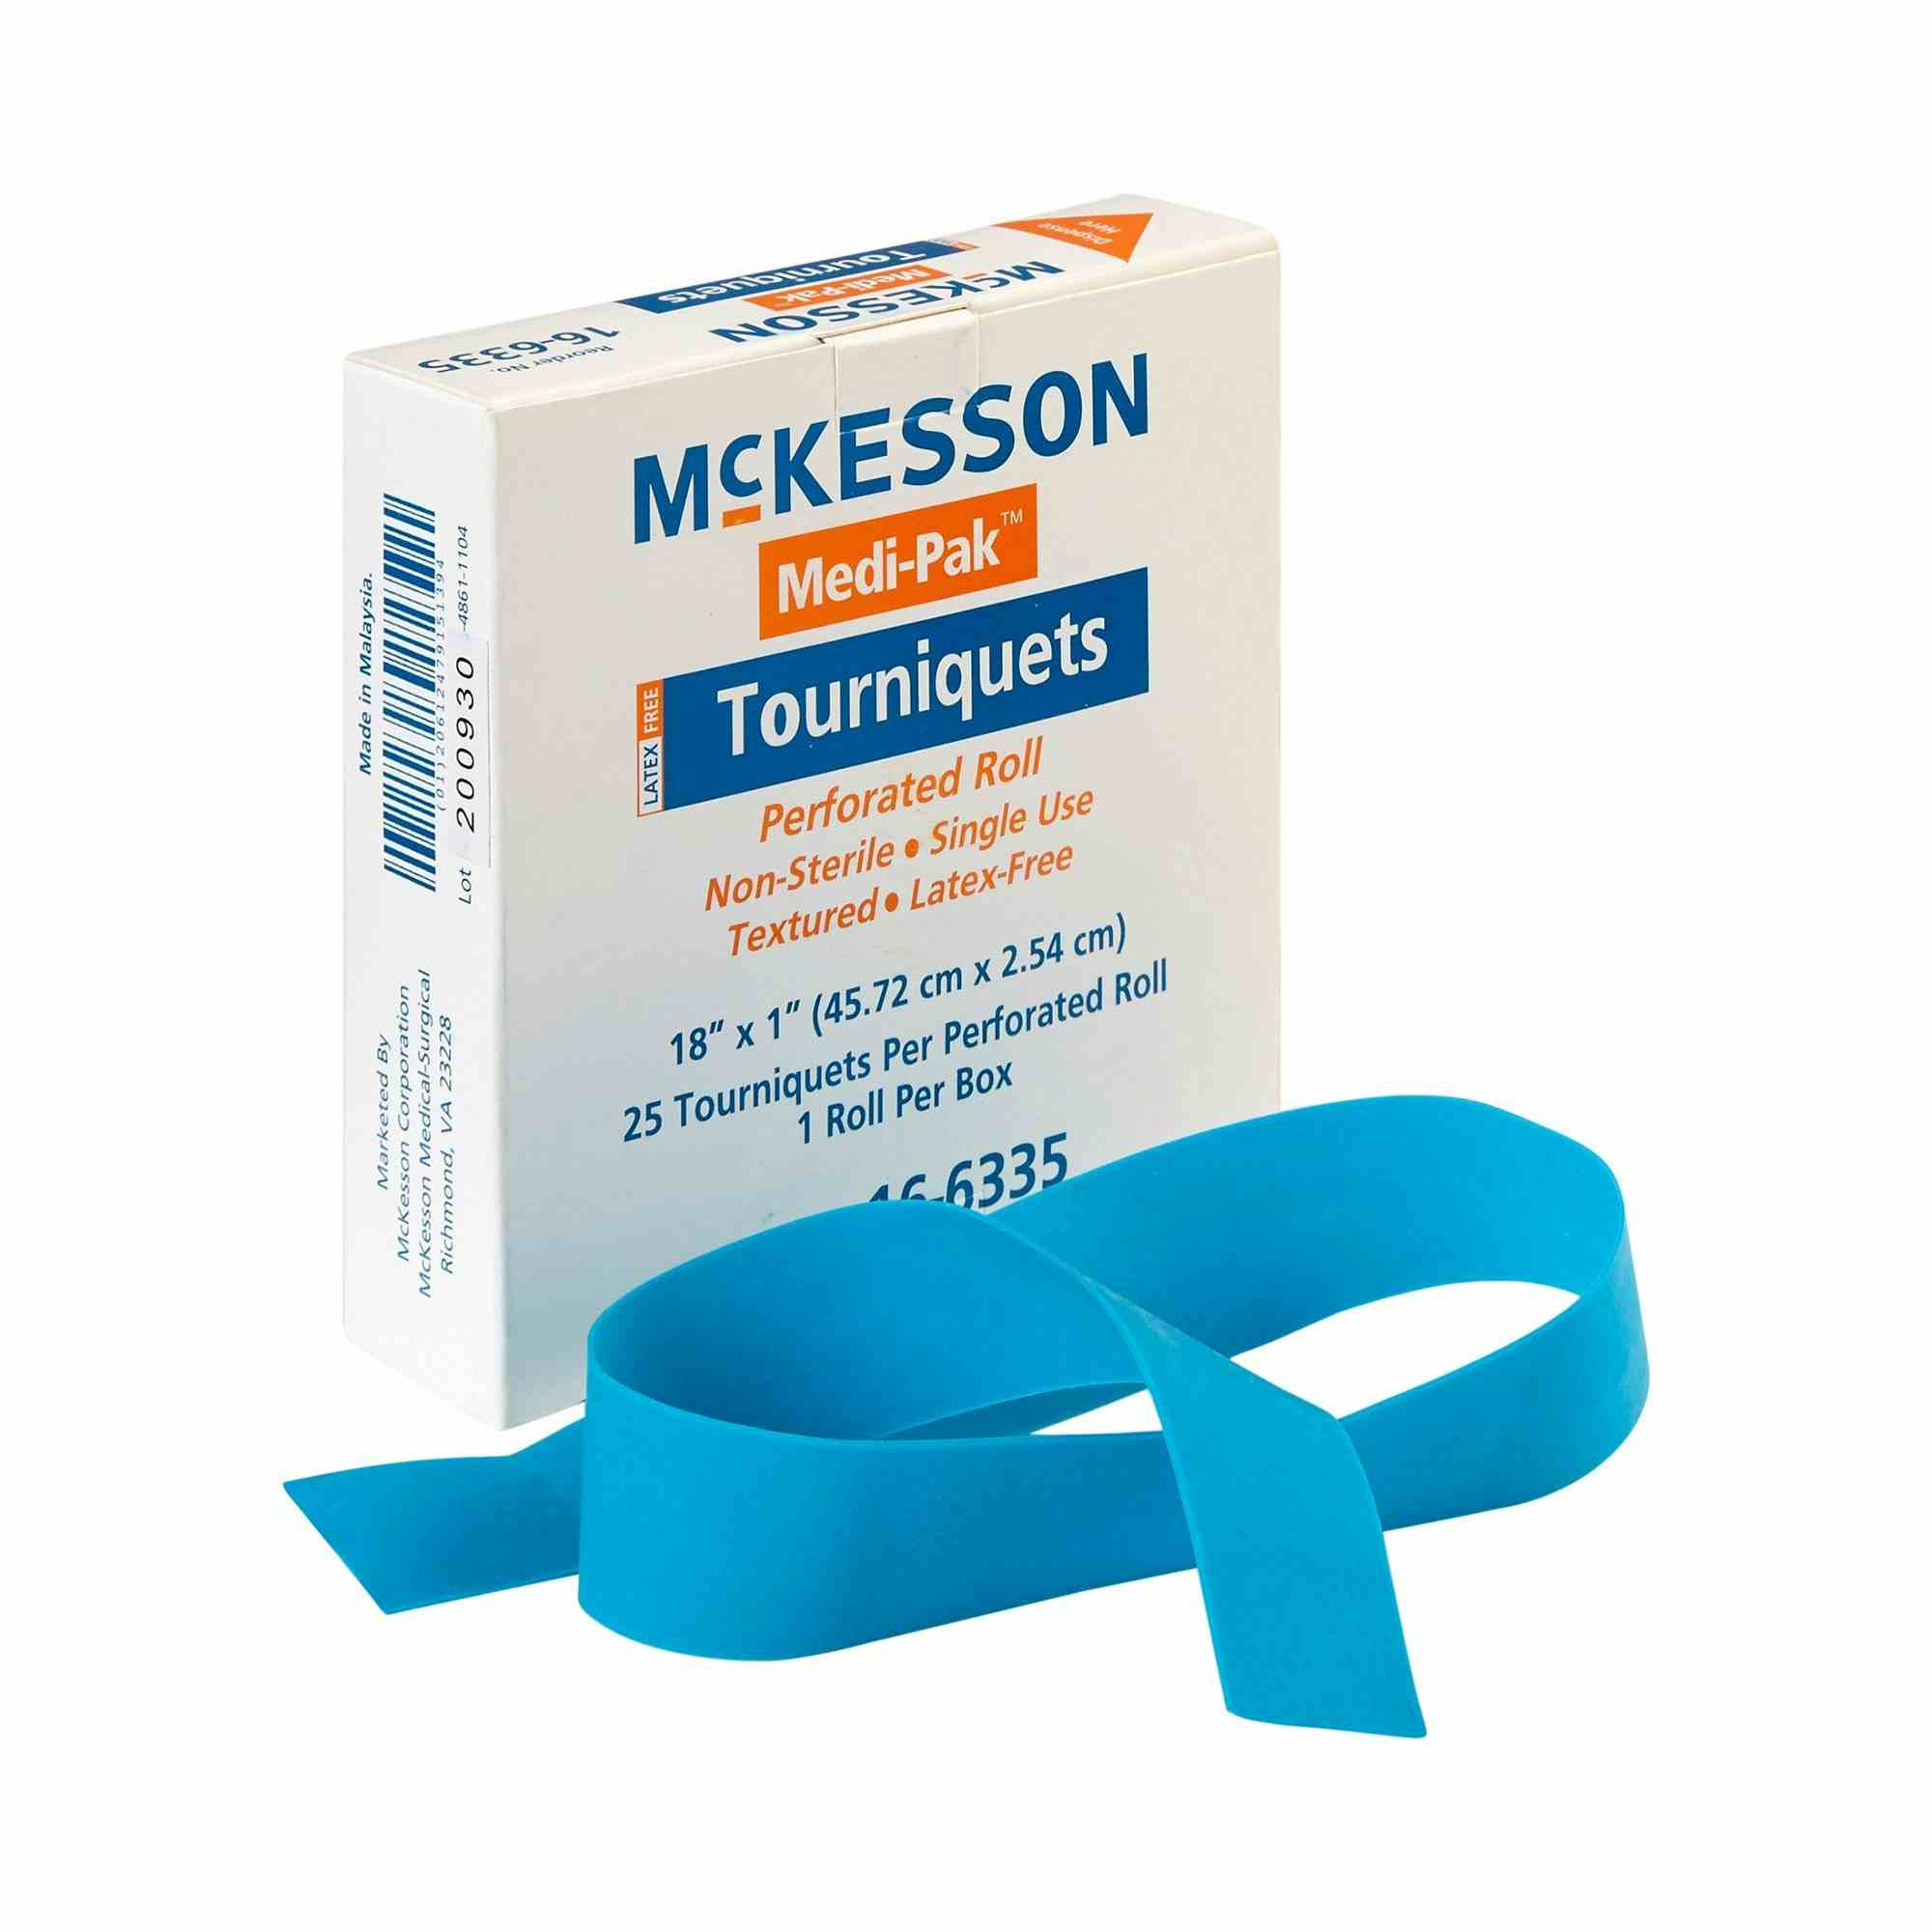 McKesson Medi-Pak Tourniquet, Perforated Roll, 18 X 1"